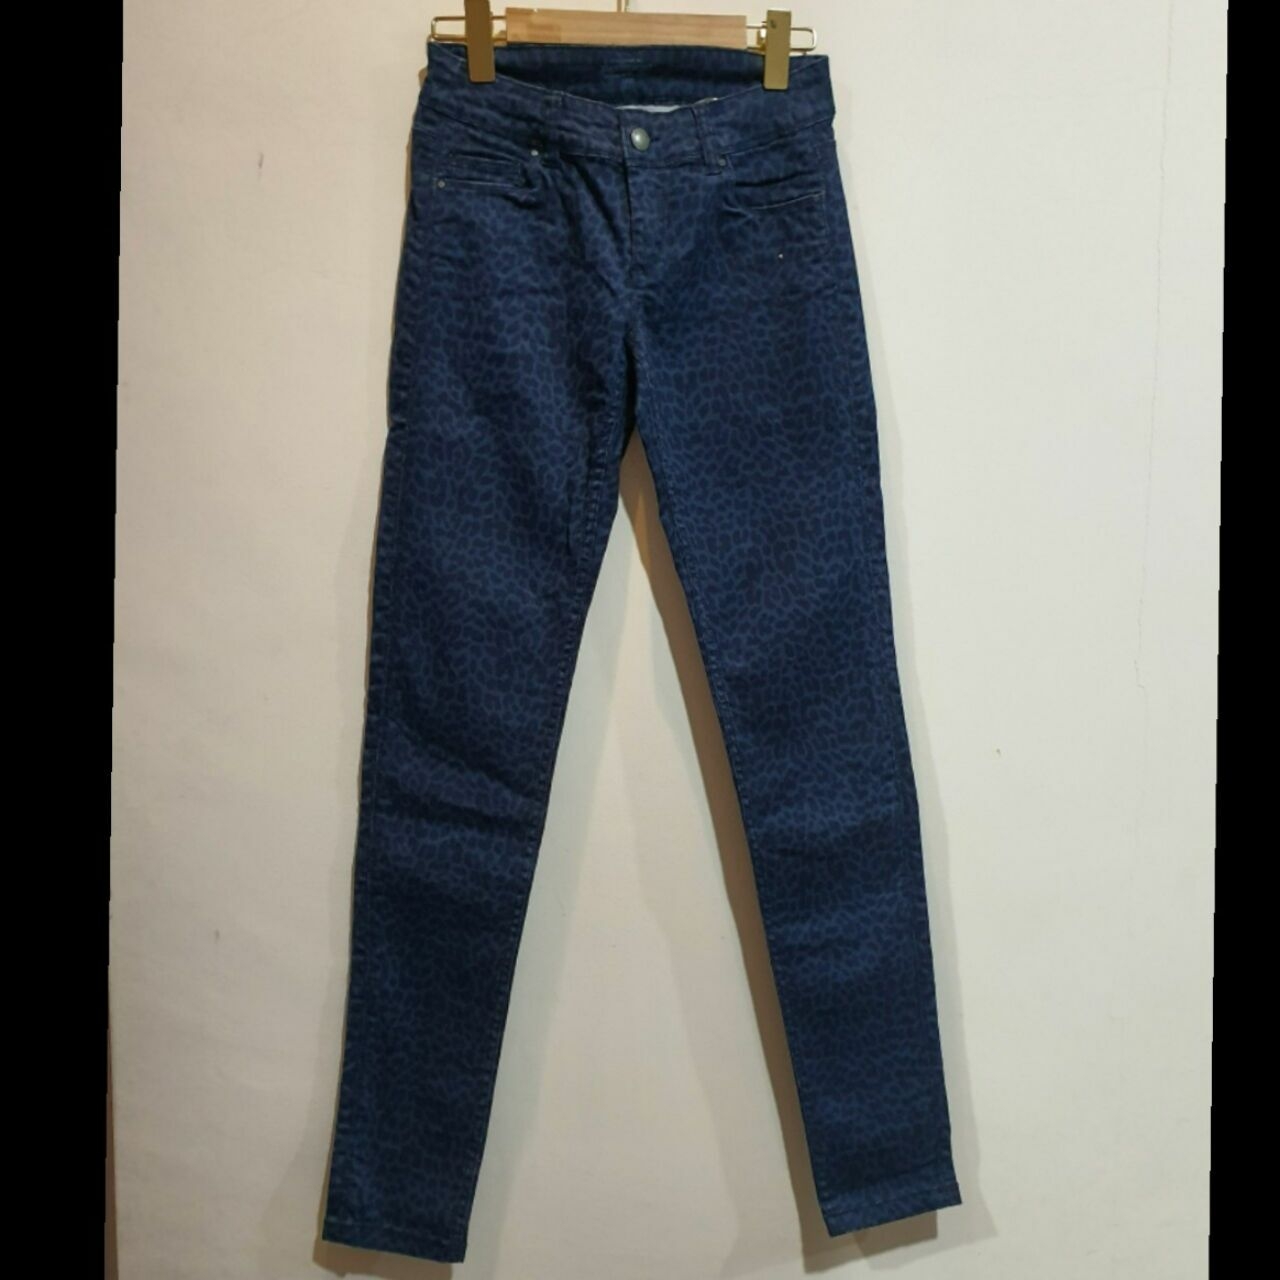 Promod Blue & Navy Celana Panjang Jeans